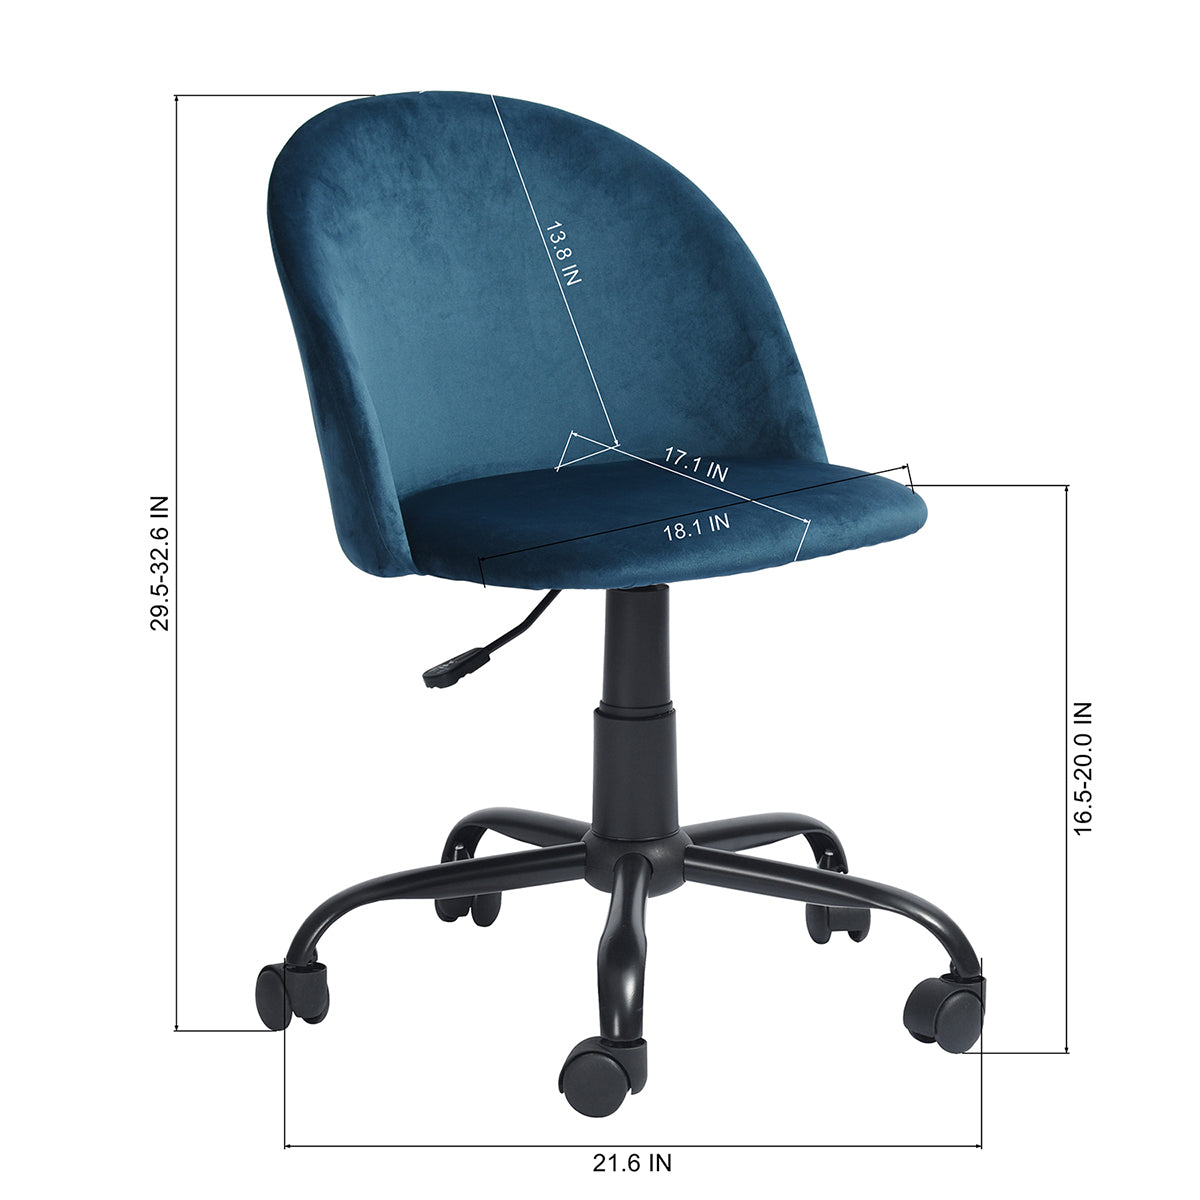 Clarissa Dark Blue Office Chair